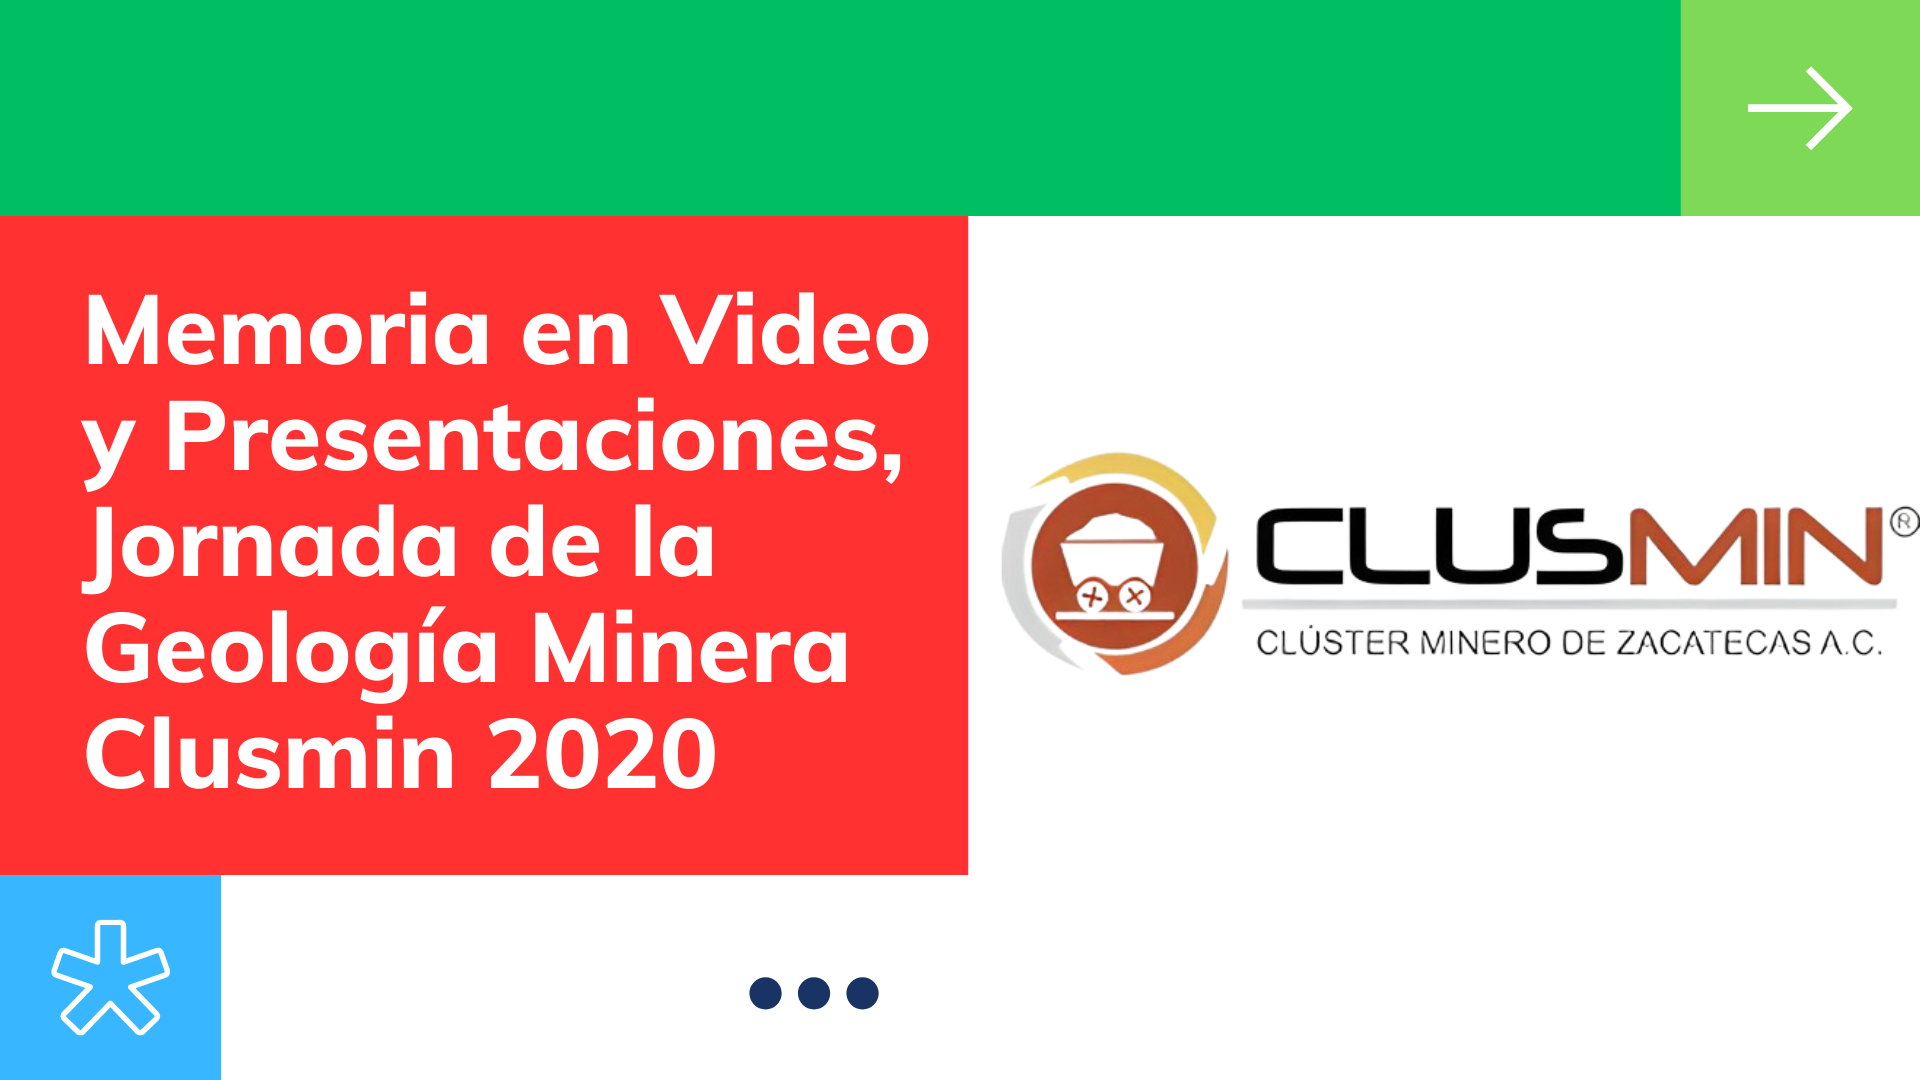 Memoria en Video y Presentaciones, Jornada de la Geología Minera Clusmin 2020